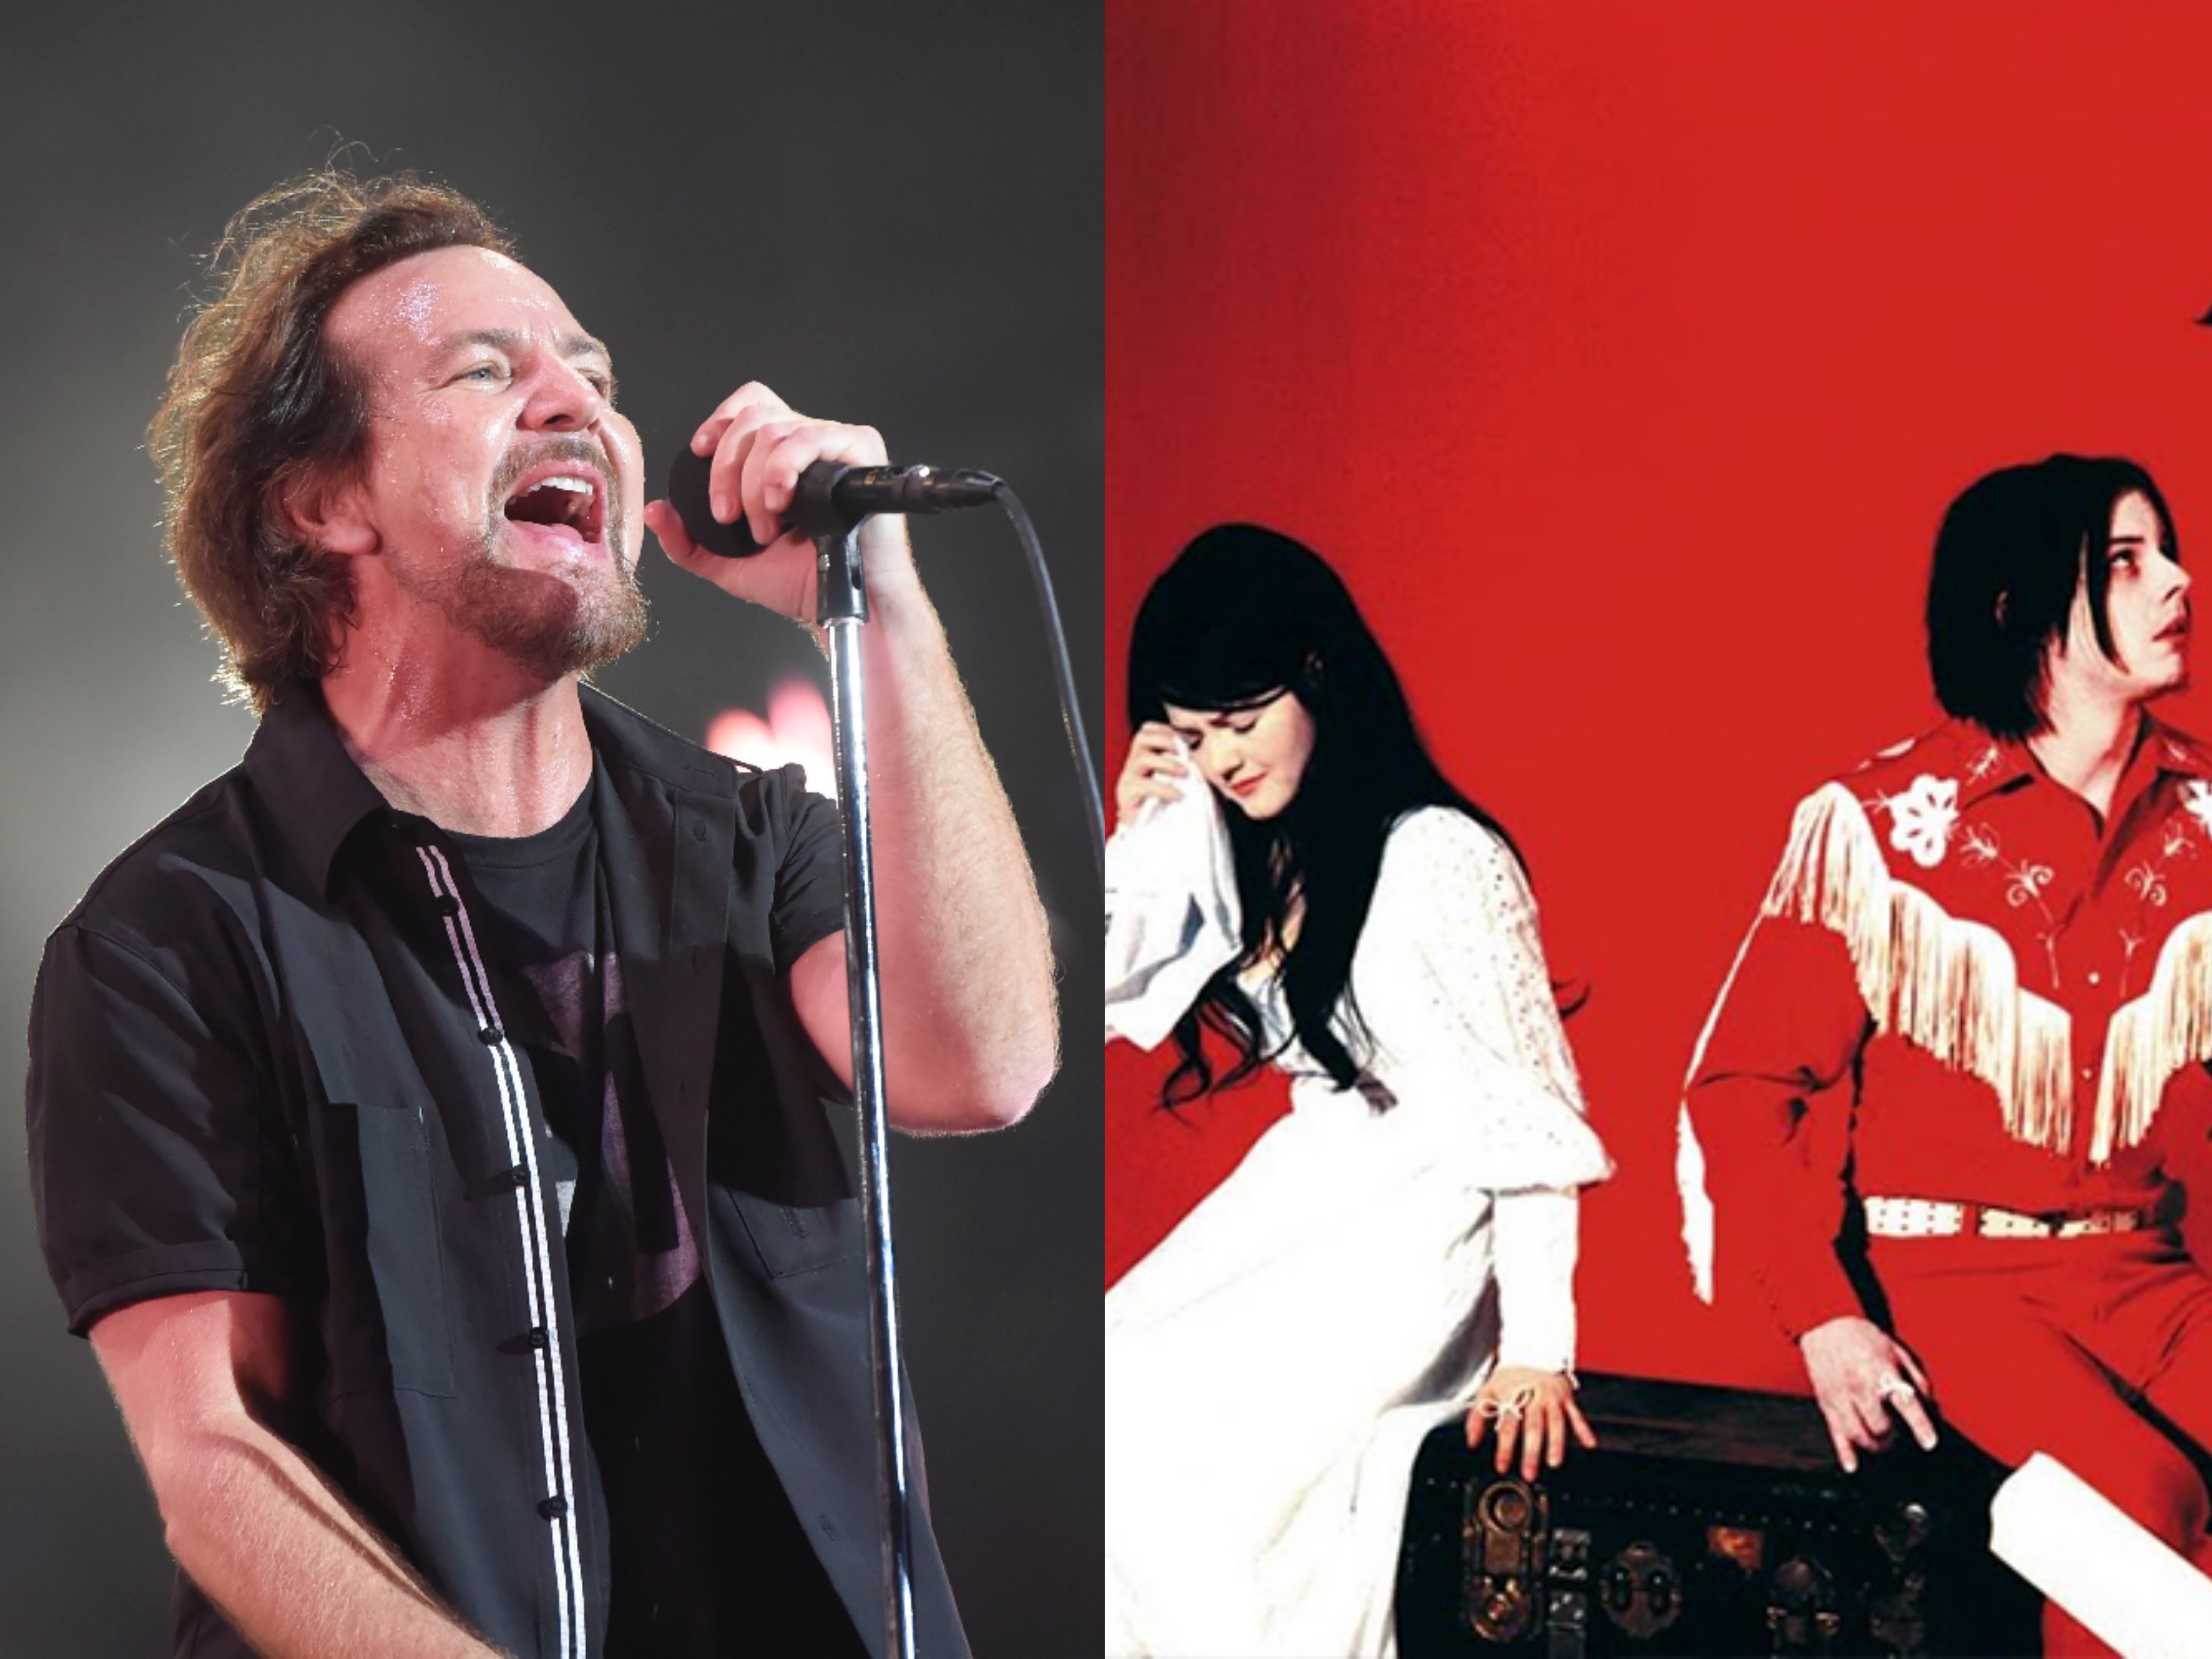 ¡Que vivan los covers a The White Stripes! ahora es turno de Pearl Jam